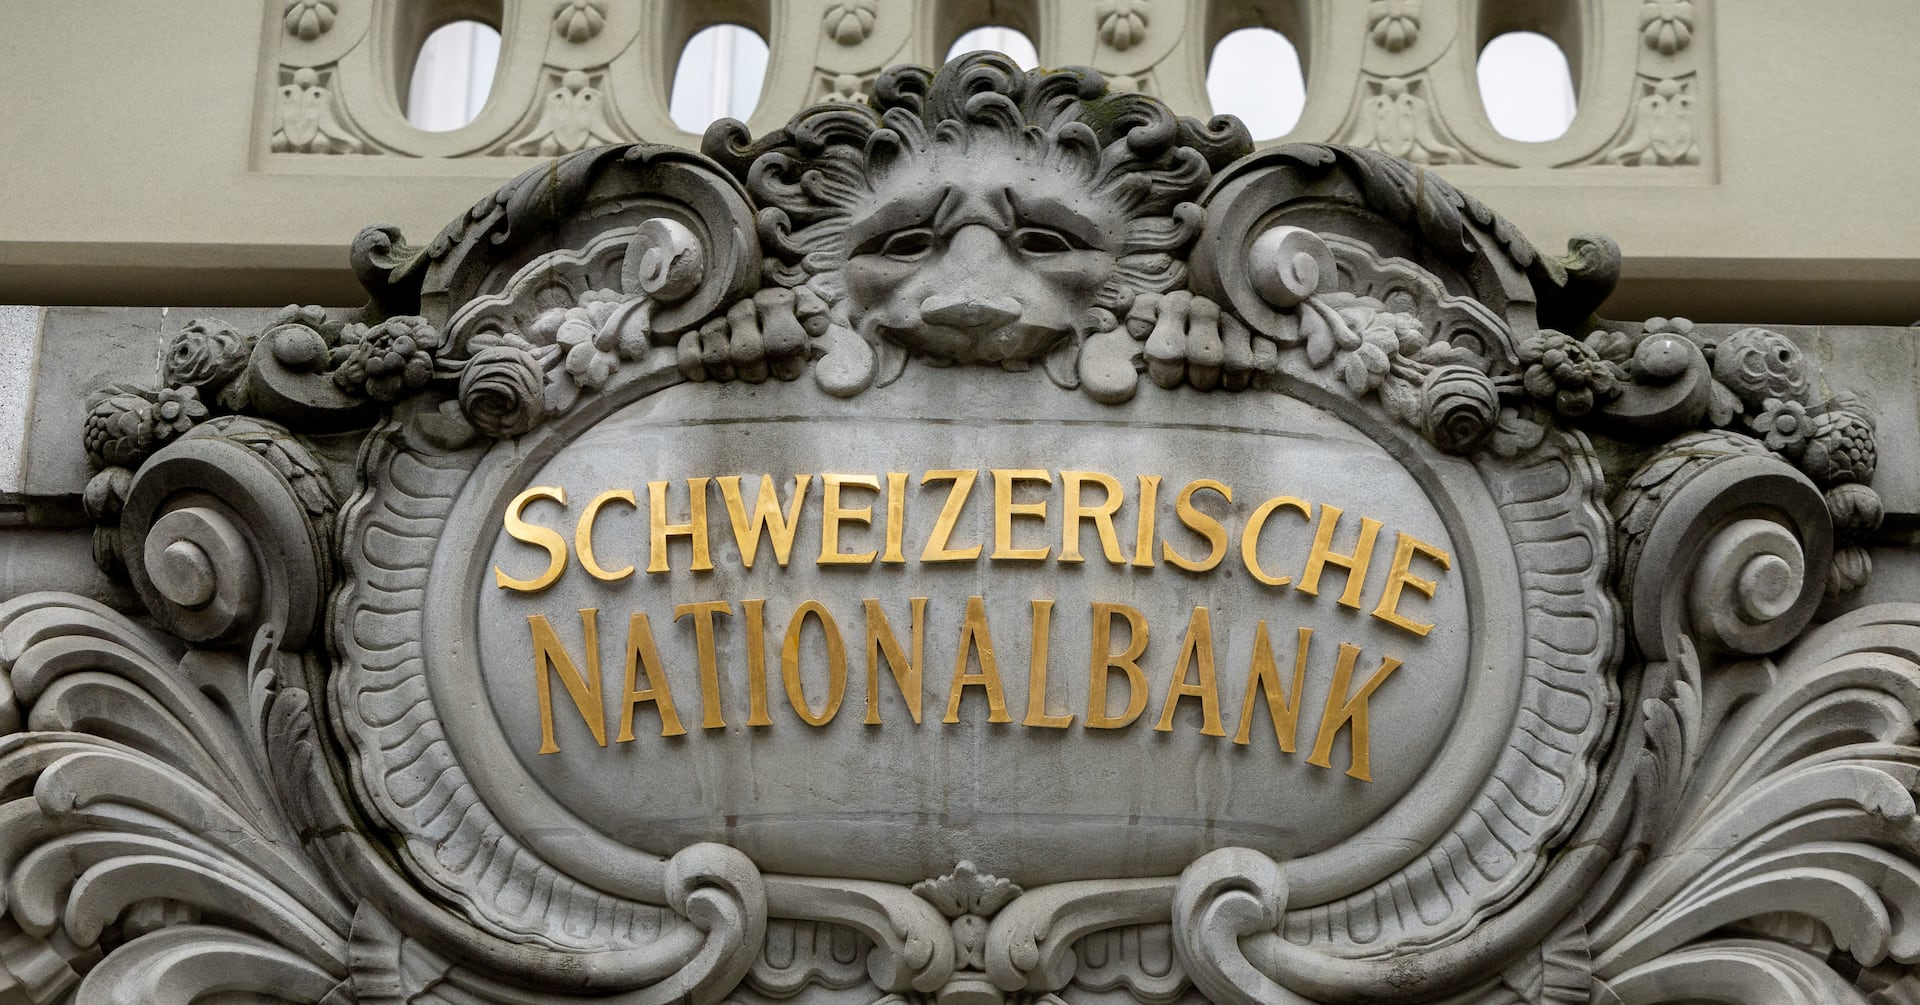 スイス中銀9年ぶり利下げ、主要中銀で初 インフレ対応奏功